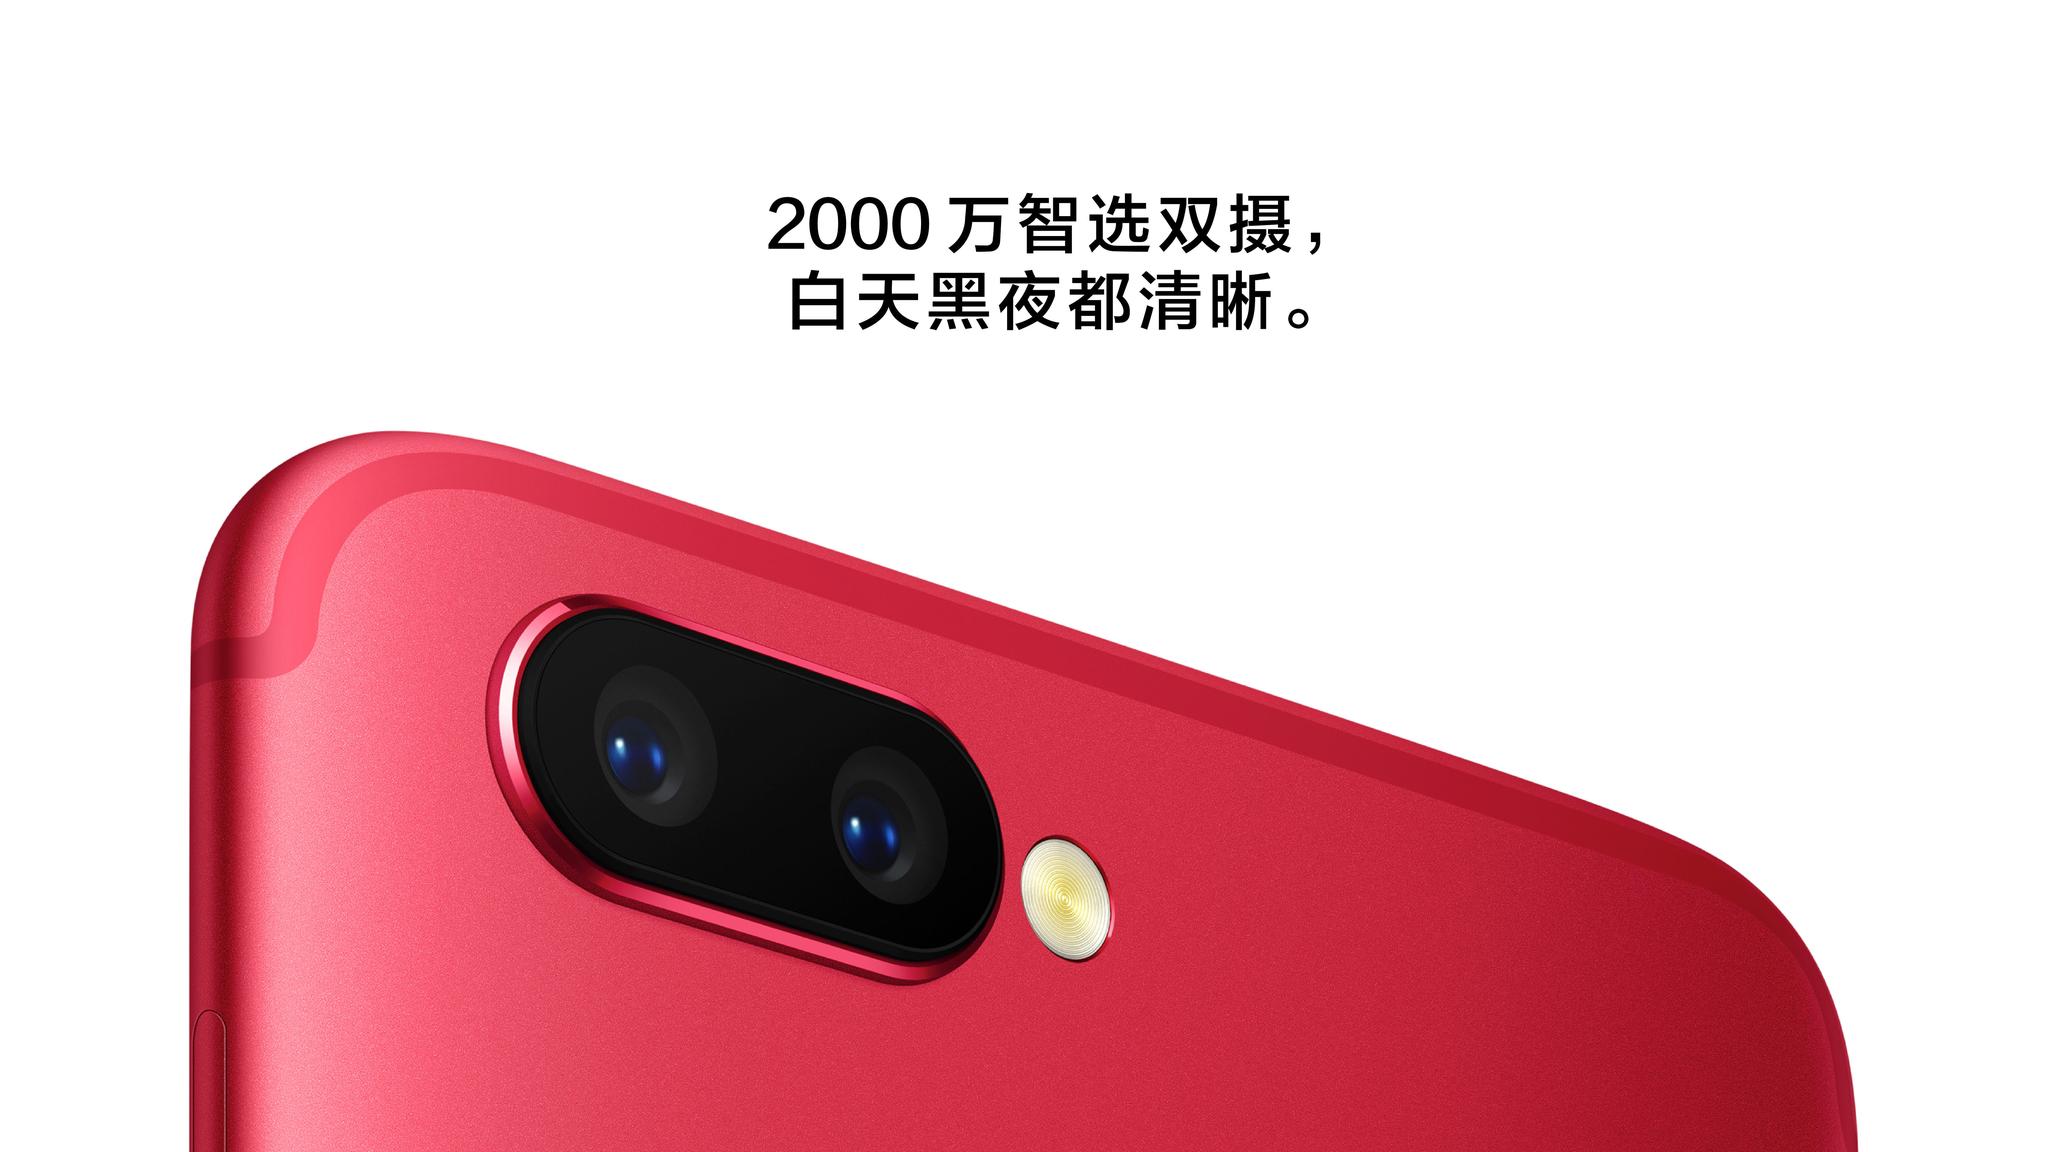 Oppo R11 с двойной камерой представлен официально